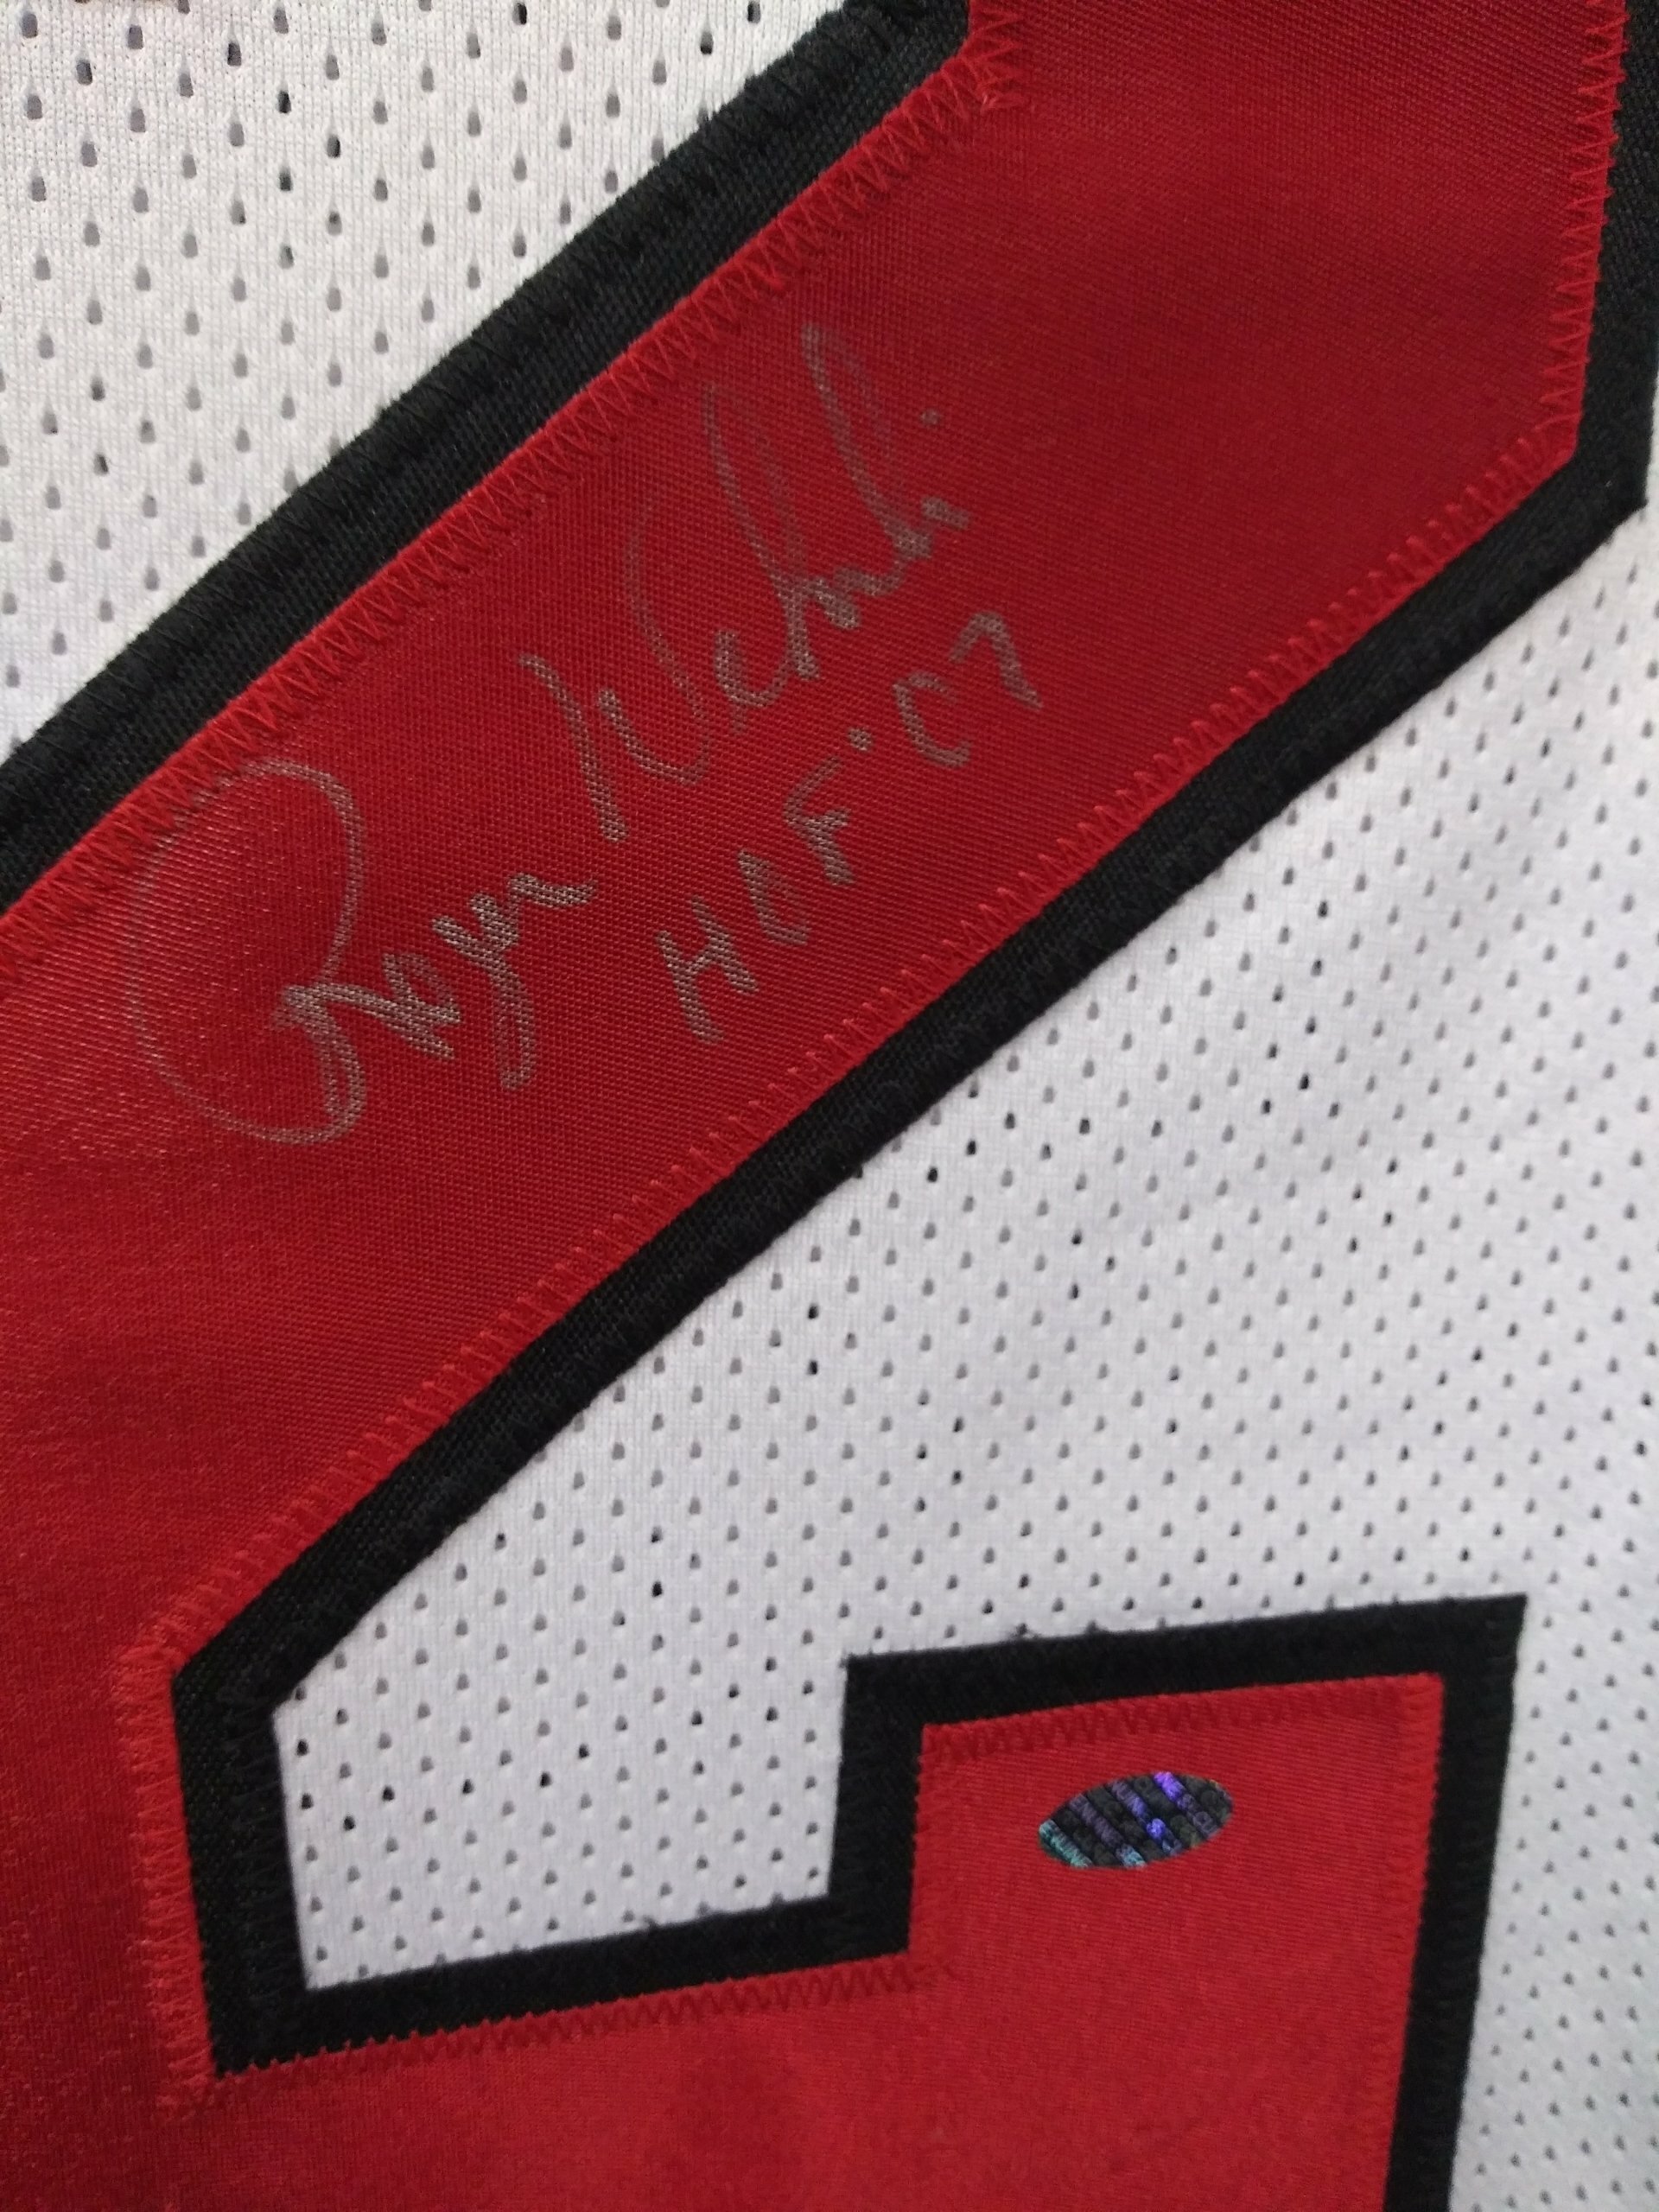 Roger Wehrli St. Louis Cardinals Signed Autographed Jersey Leaf